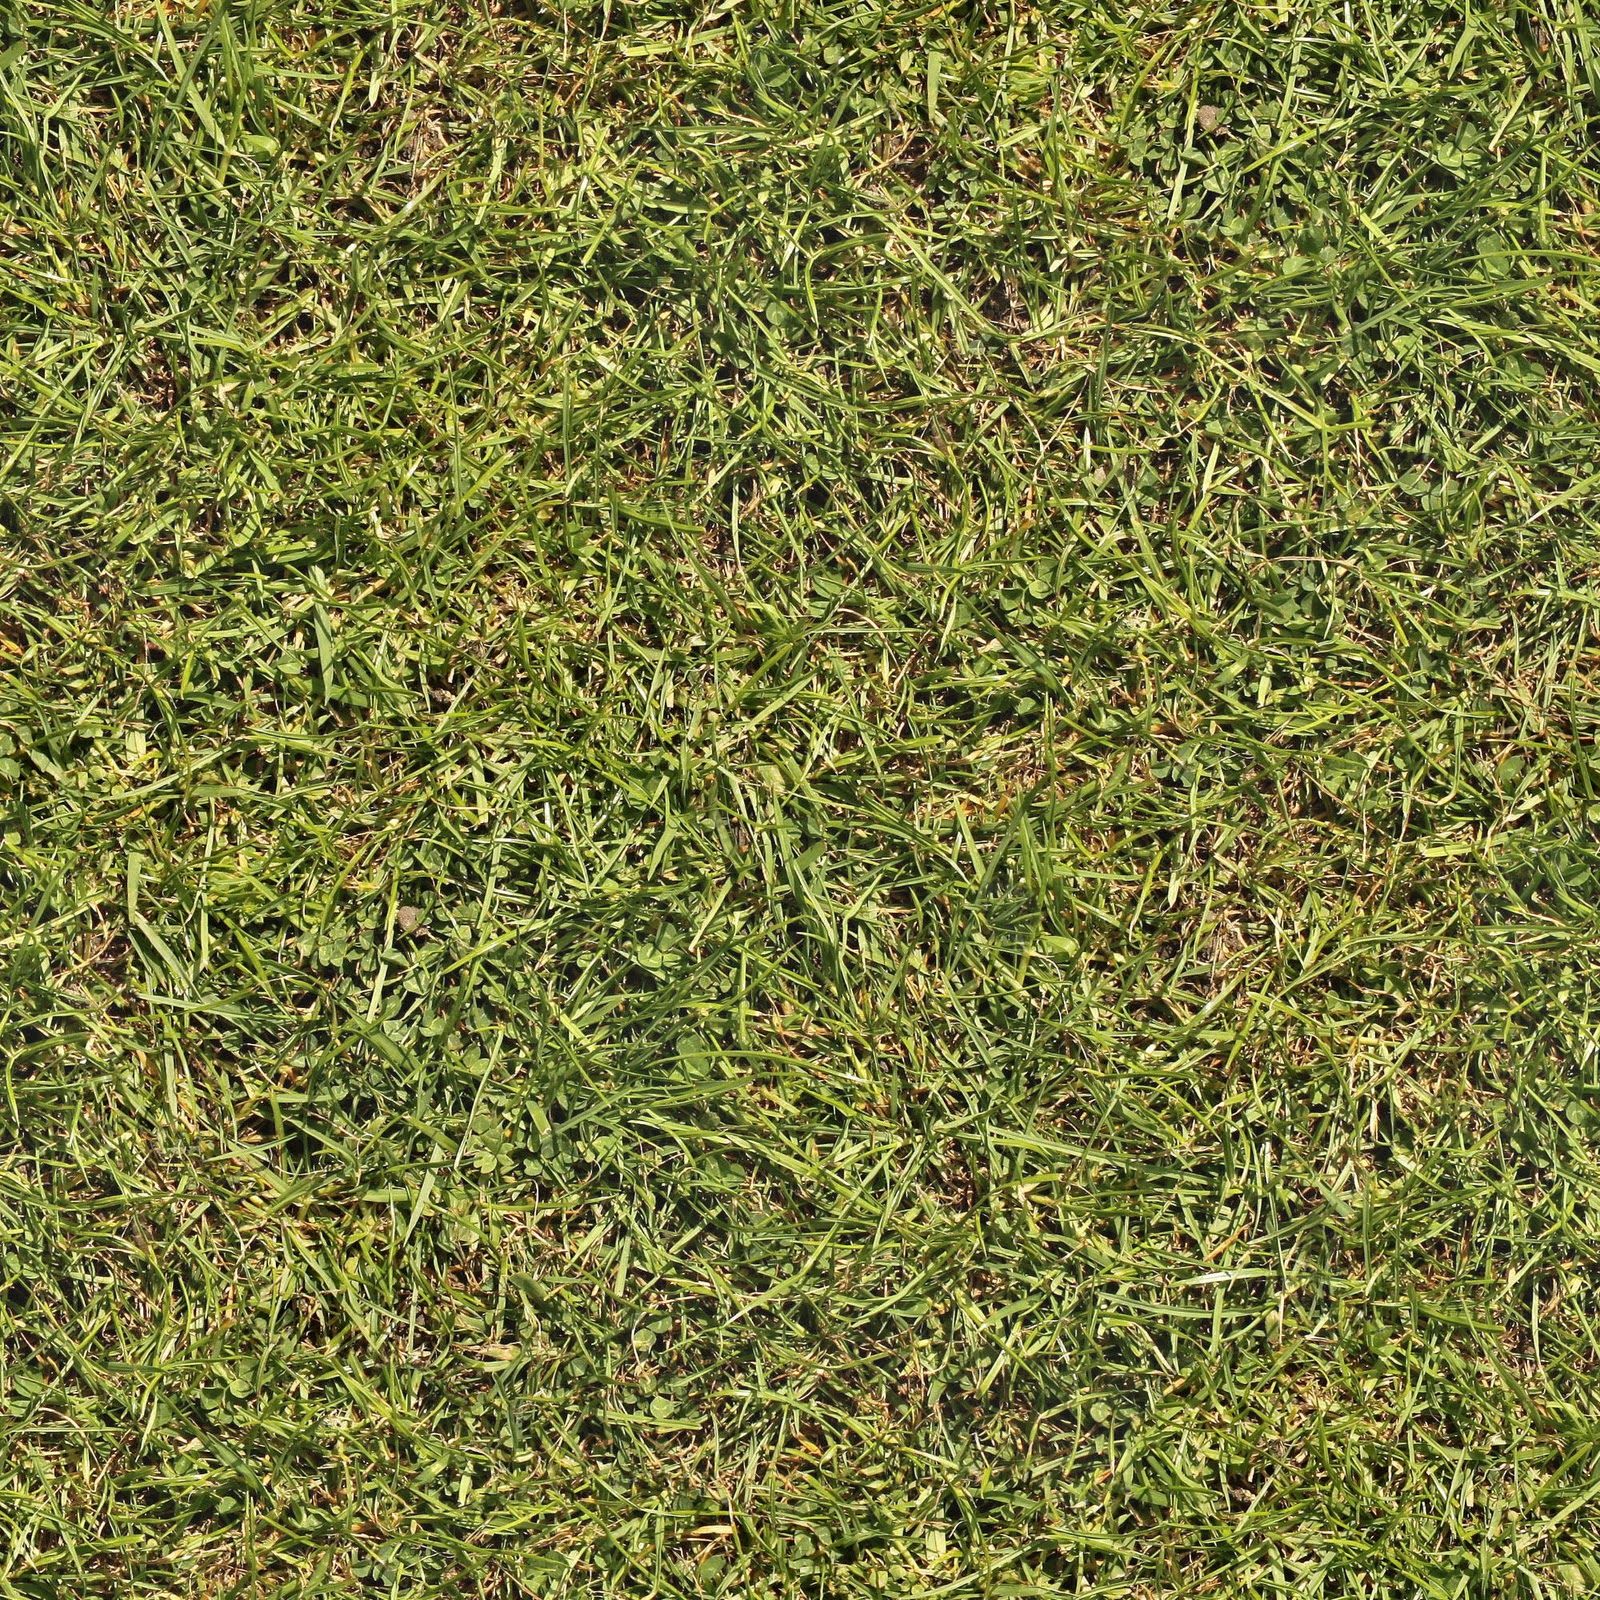 Grass+02+seamless.jpg (1600×1600) | Textur | Pinterest ...